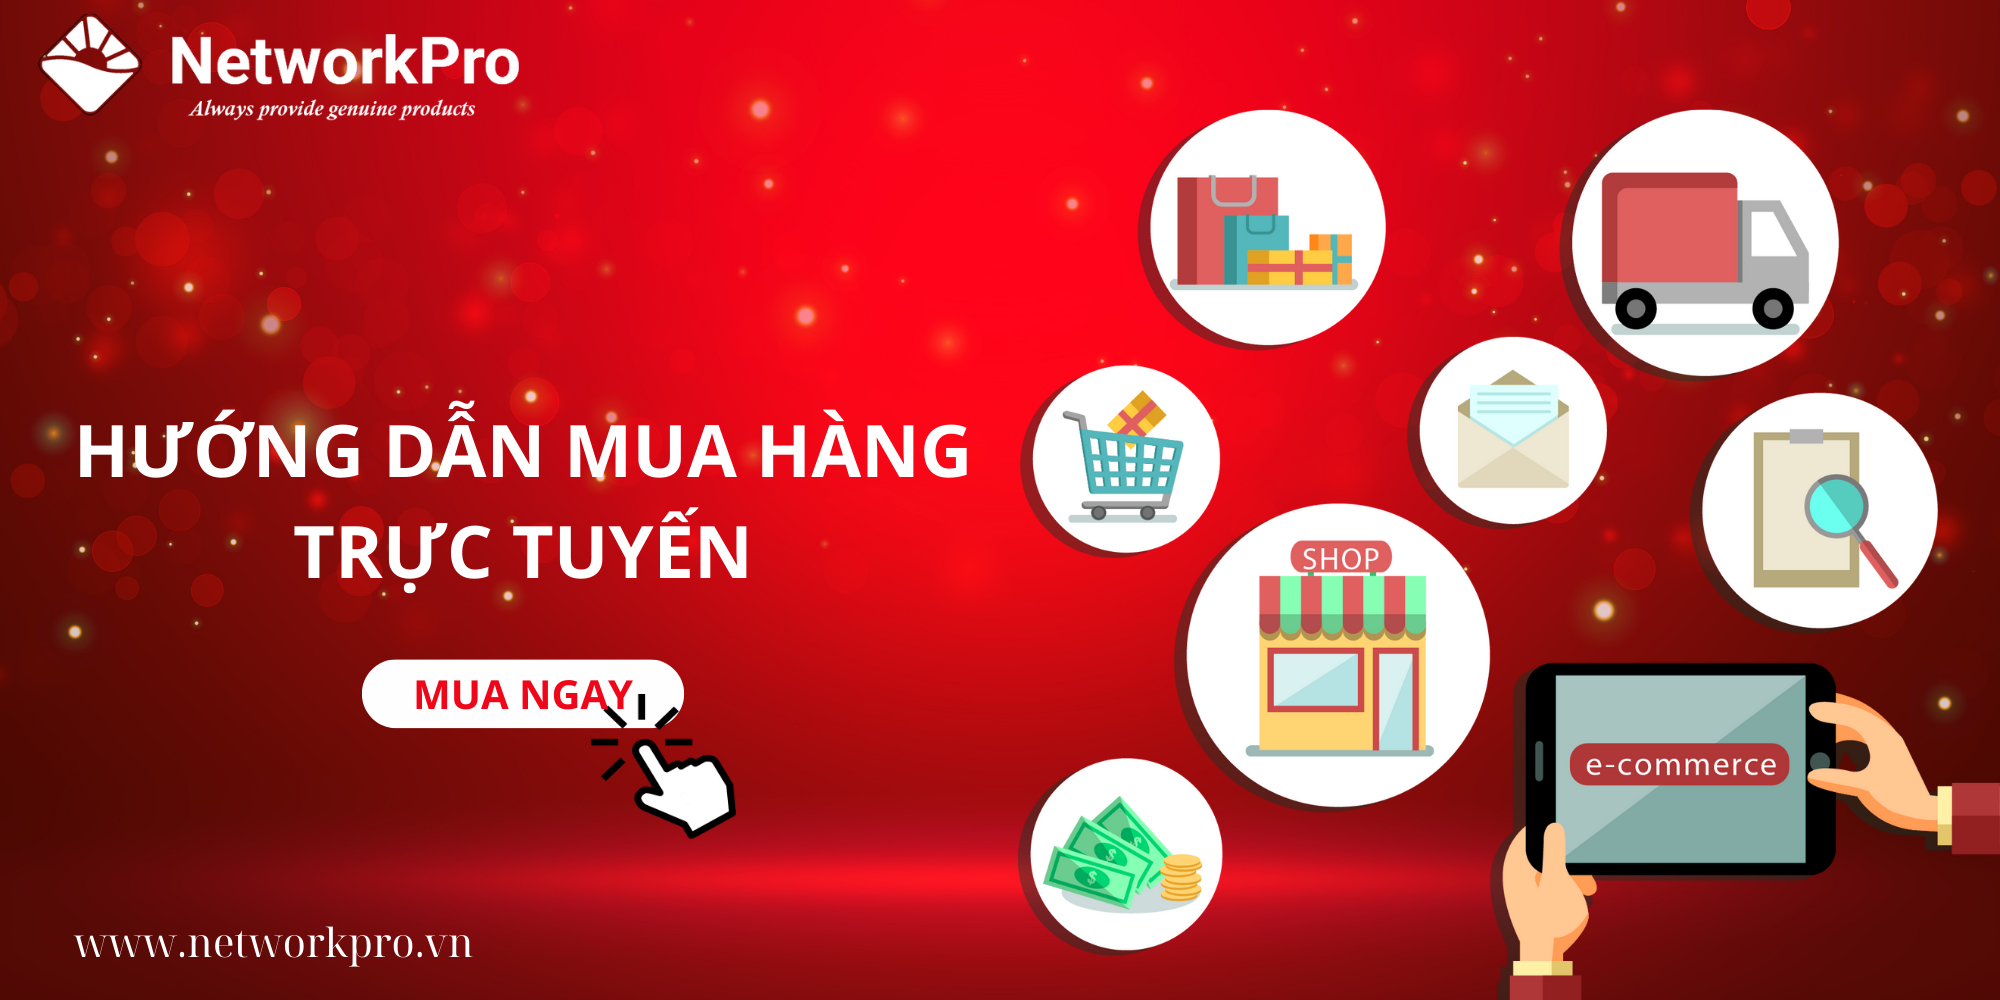 Hướng dẫn mua hàng trực tuyến tại NetworkPro.vn